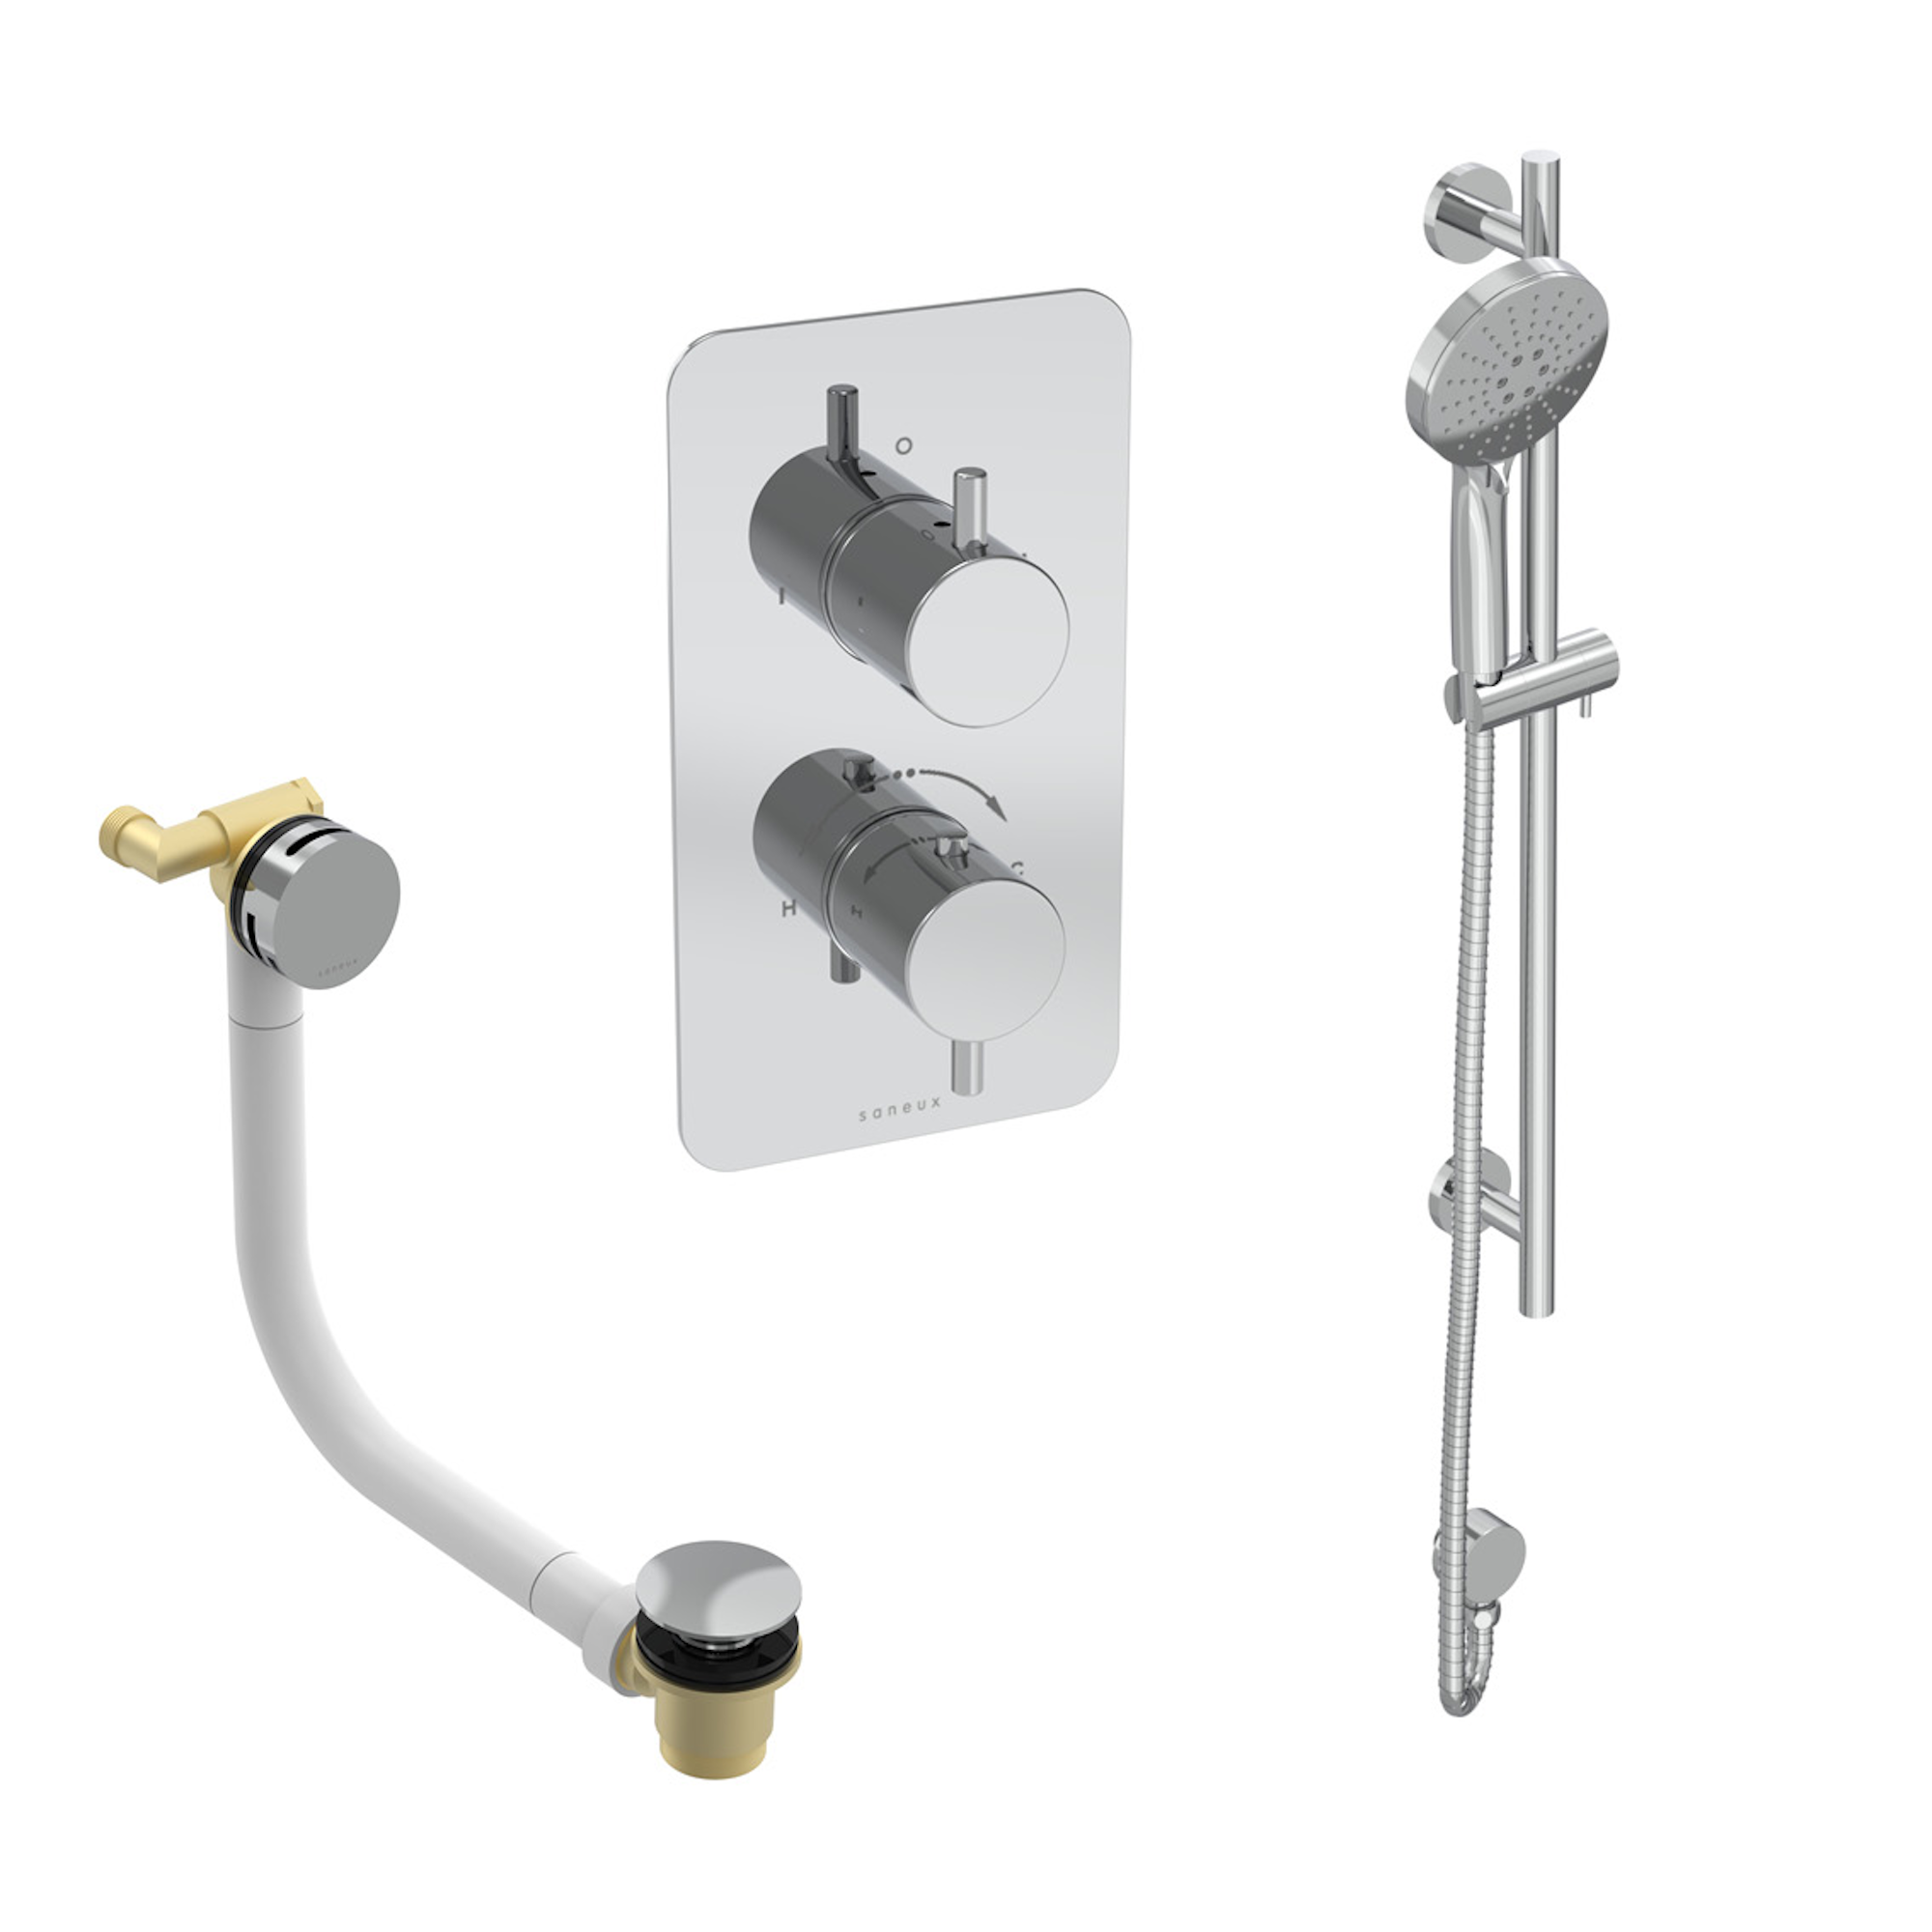 COS 2 way shower kit - w/ 3 Function Handset & Slider Rail & Bath filler - Chrome